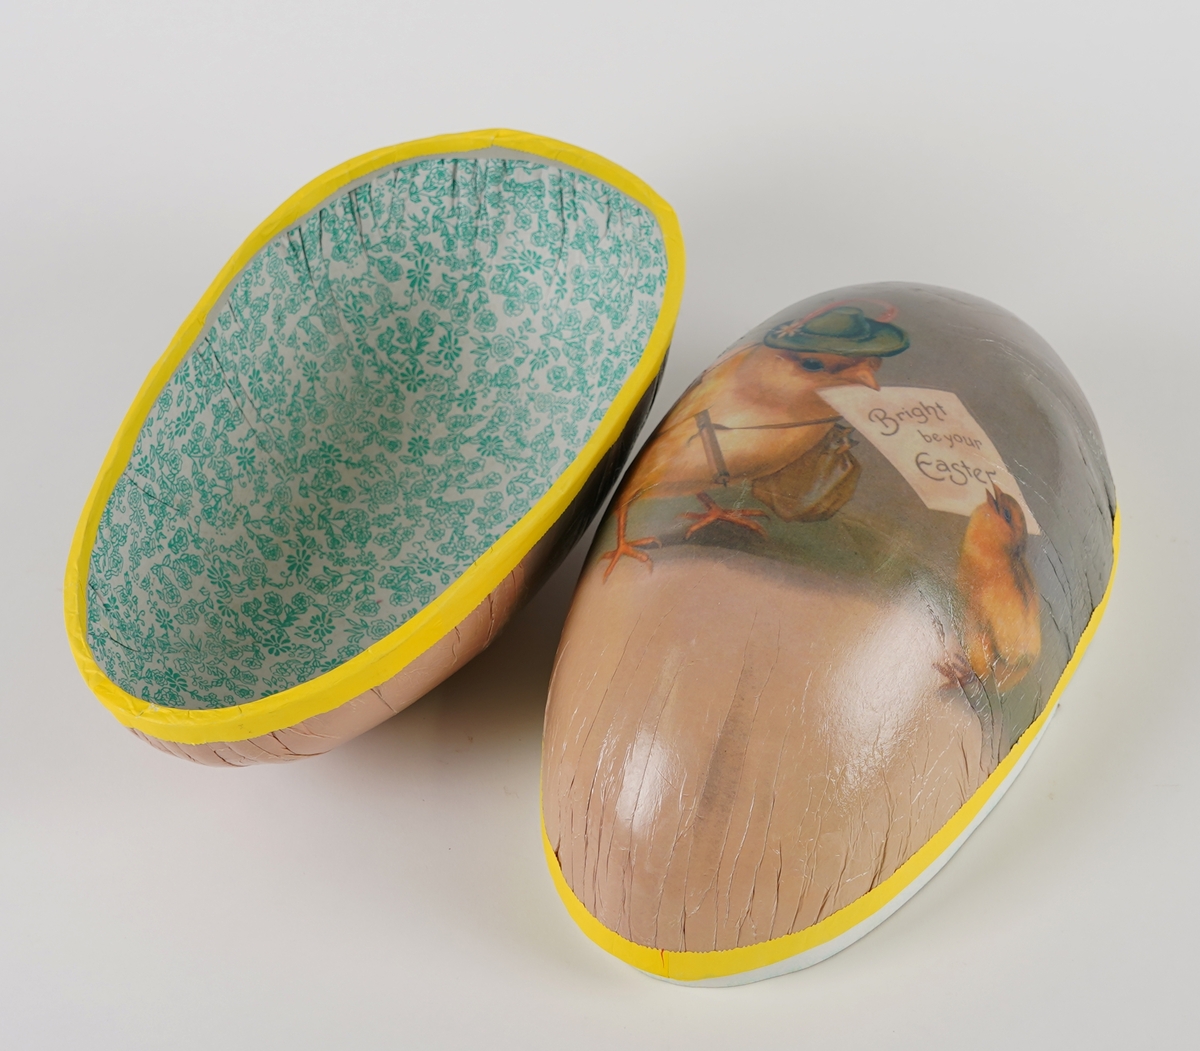 Emballasje forma som eit egg i to deler. Gjenstanden er primert tenkt til å innehalda godteri for påskehelga.